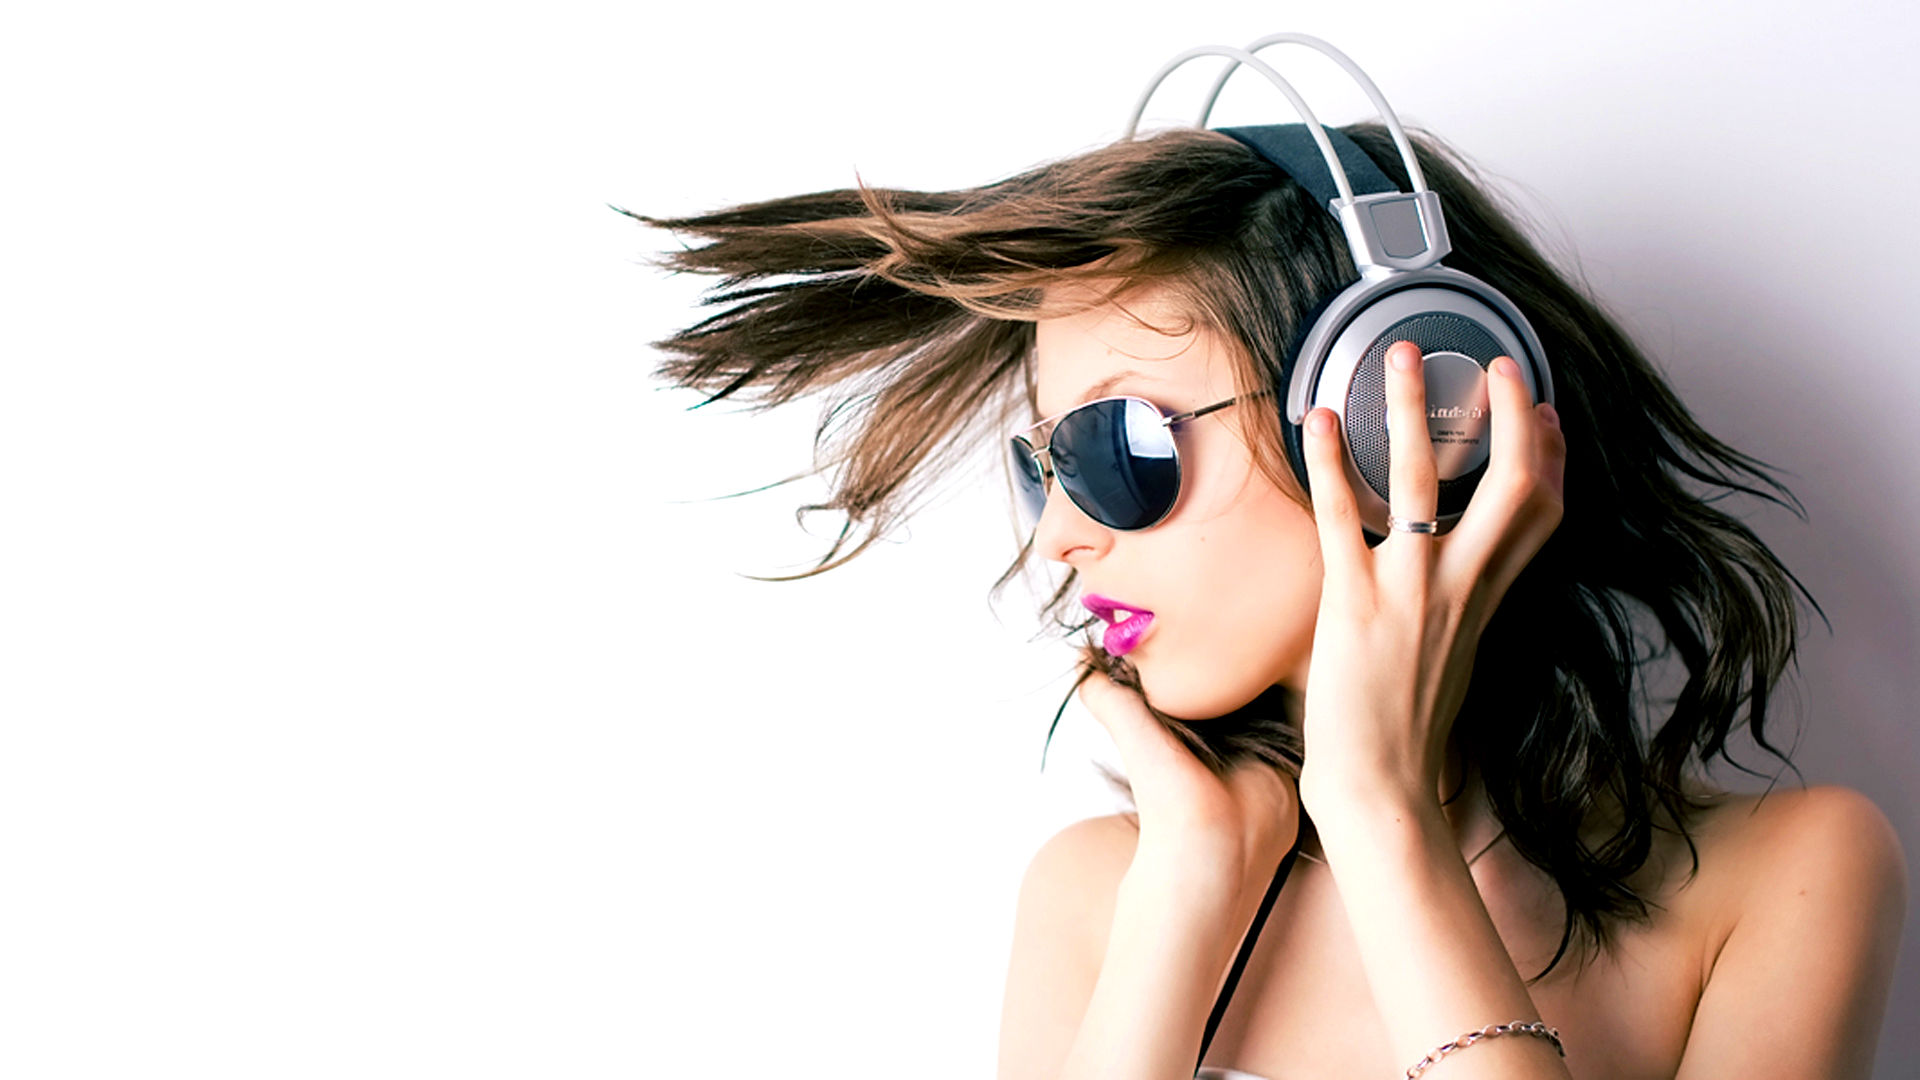 Free download wallpaper Headphones, Music on your PC desktop